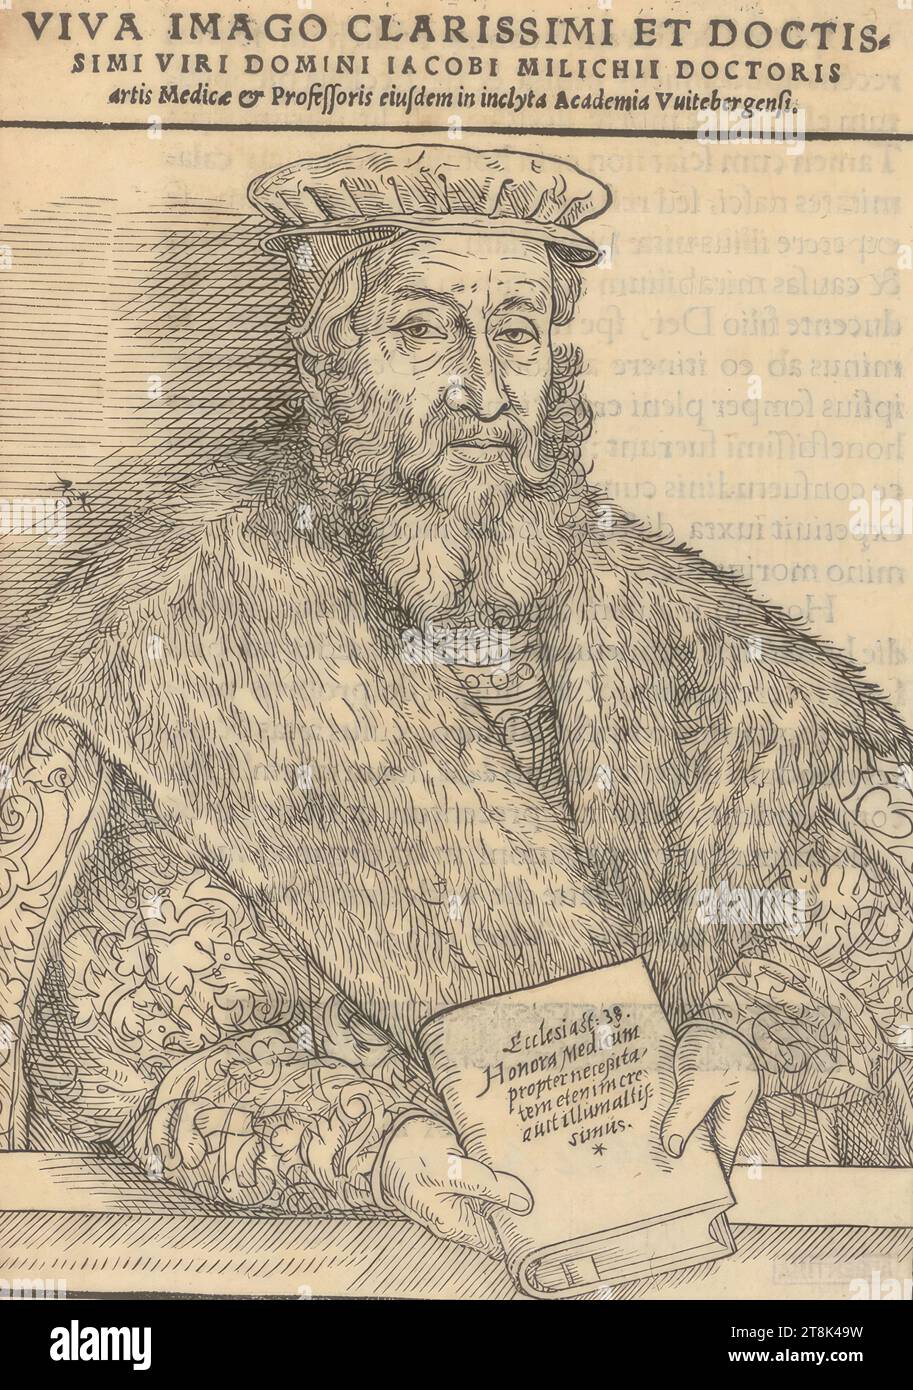 Dr. Jakob Milich, 1560, estampe, gravure sur bois, feuille : 17,7 × 12,5 cm, ci-dessus : 'VIV IMAGO CLARISSIMI et DOCTIS / SIMI VIRI DOMINI IACOBI MILICHII DOCTORIS / artis Medicæ & Professoris eiusdem in inclyta Academia Vuitebergensi.' ; sur la couverture du livre ci-dessous 'Ecclesiast : 38. / Honora Medicum / propter neceßita- / TEM etenim cre / auit illumaltis simus Banque D'Images